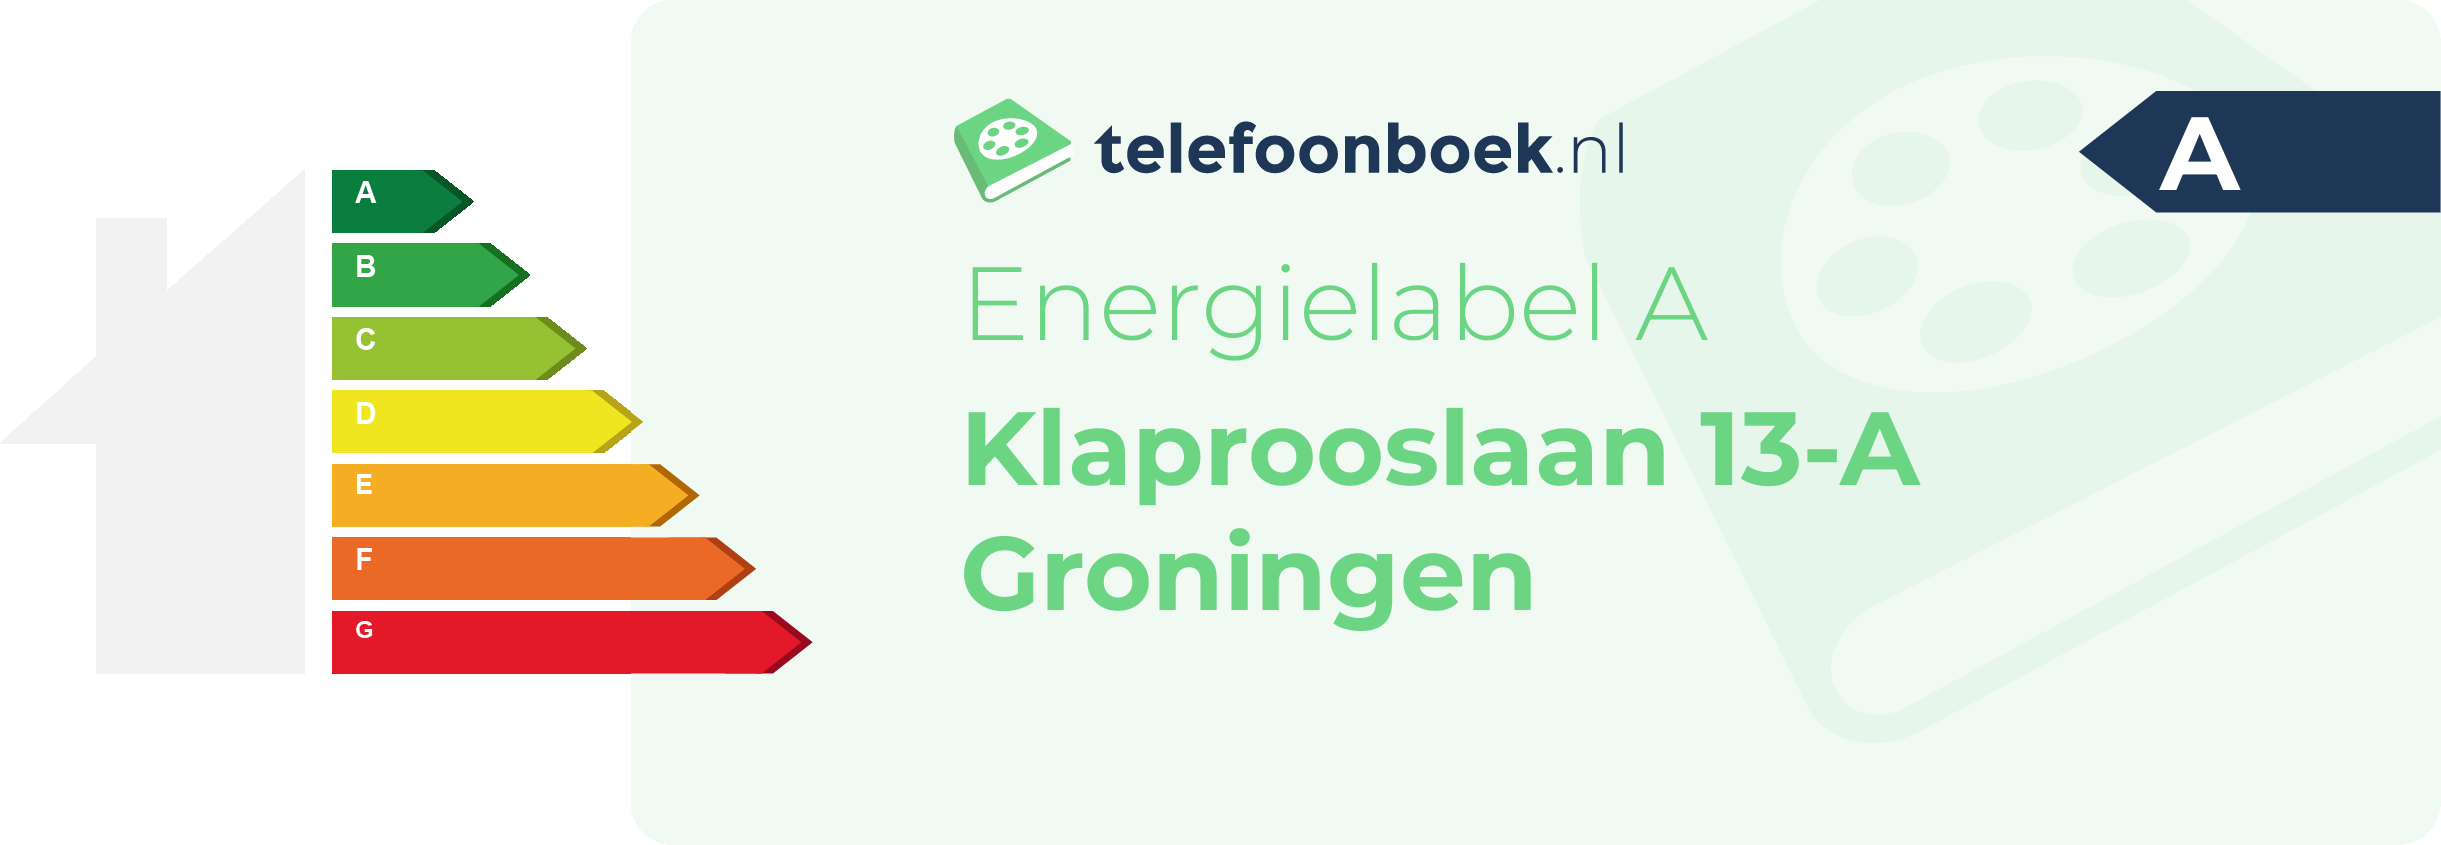 Energielabel Klaprooslaan 13-A Groningen